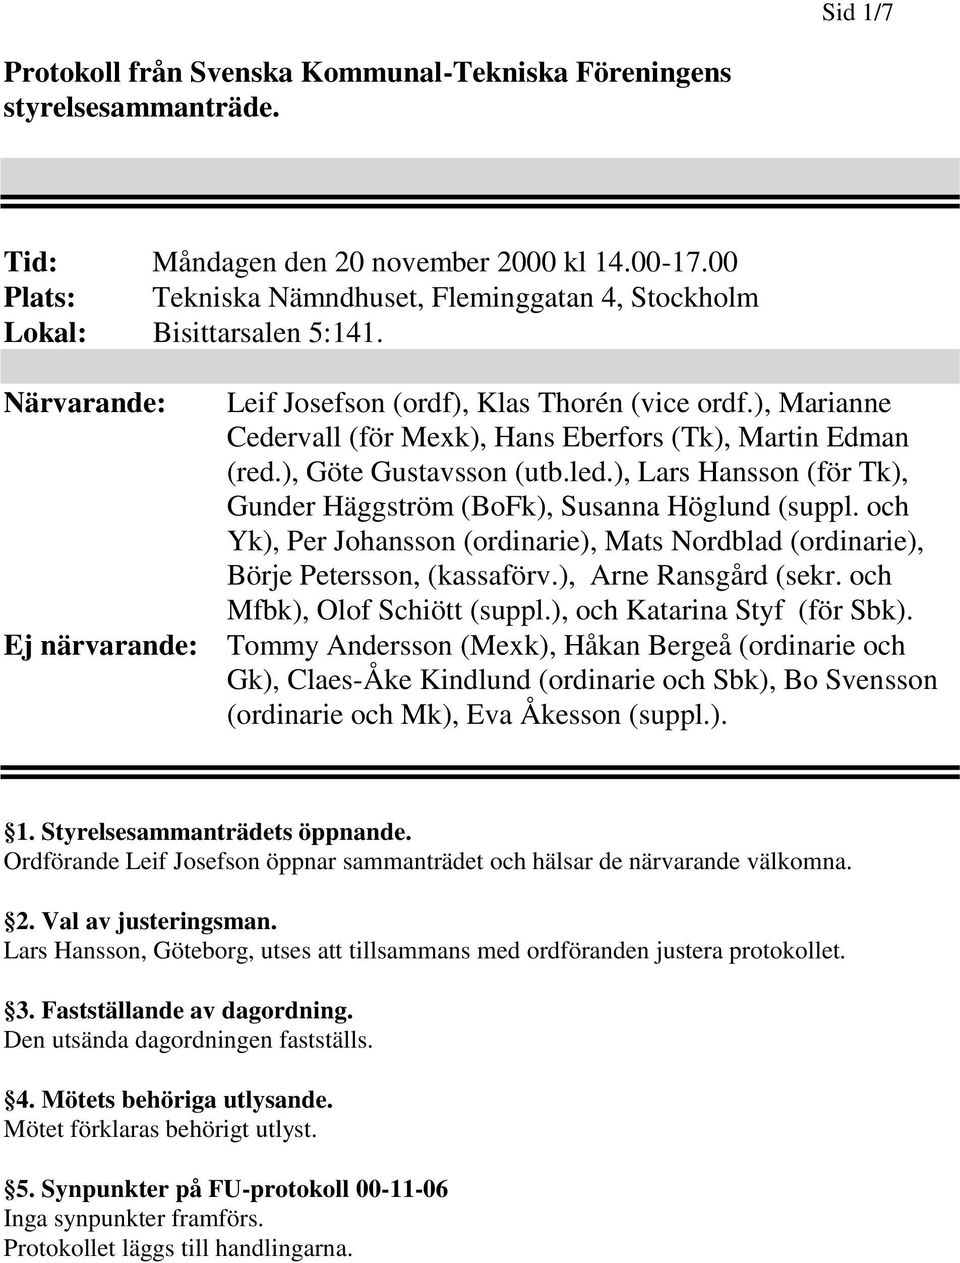 ), Marianne Cedervall (för Mexk), Hans Eberfors (Tk), Martin Edman (red.), Göte Gustavsson (utb.led.), Lars Hansson (för Tk), Gunder Häggström (BoFk), Susanna Höglund (suppl.